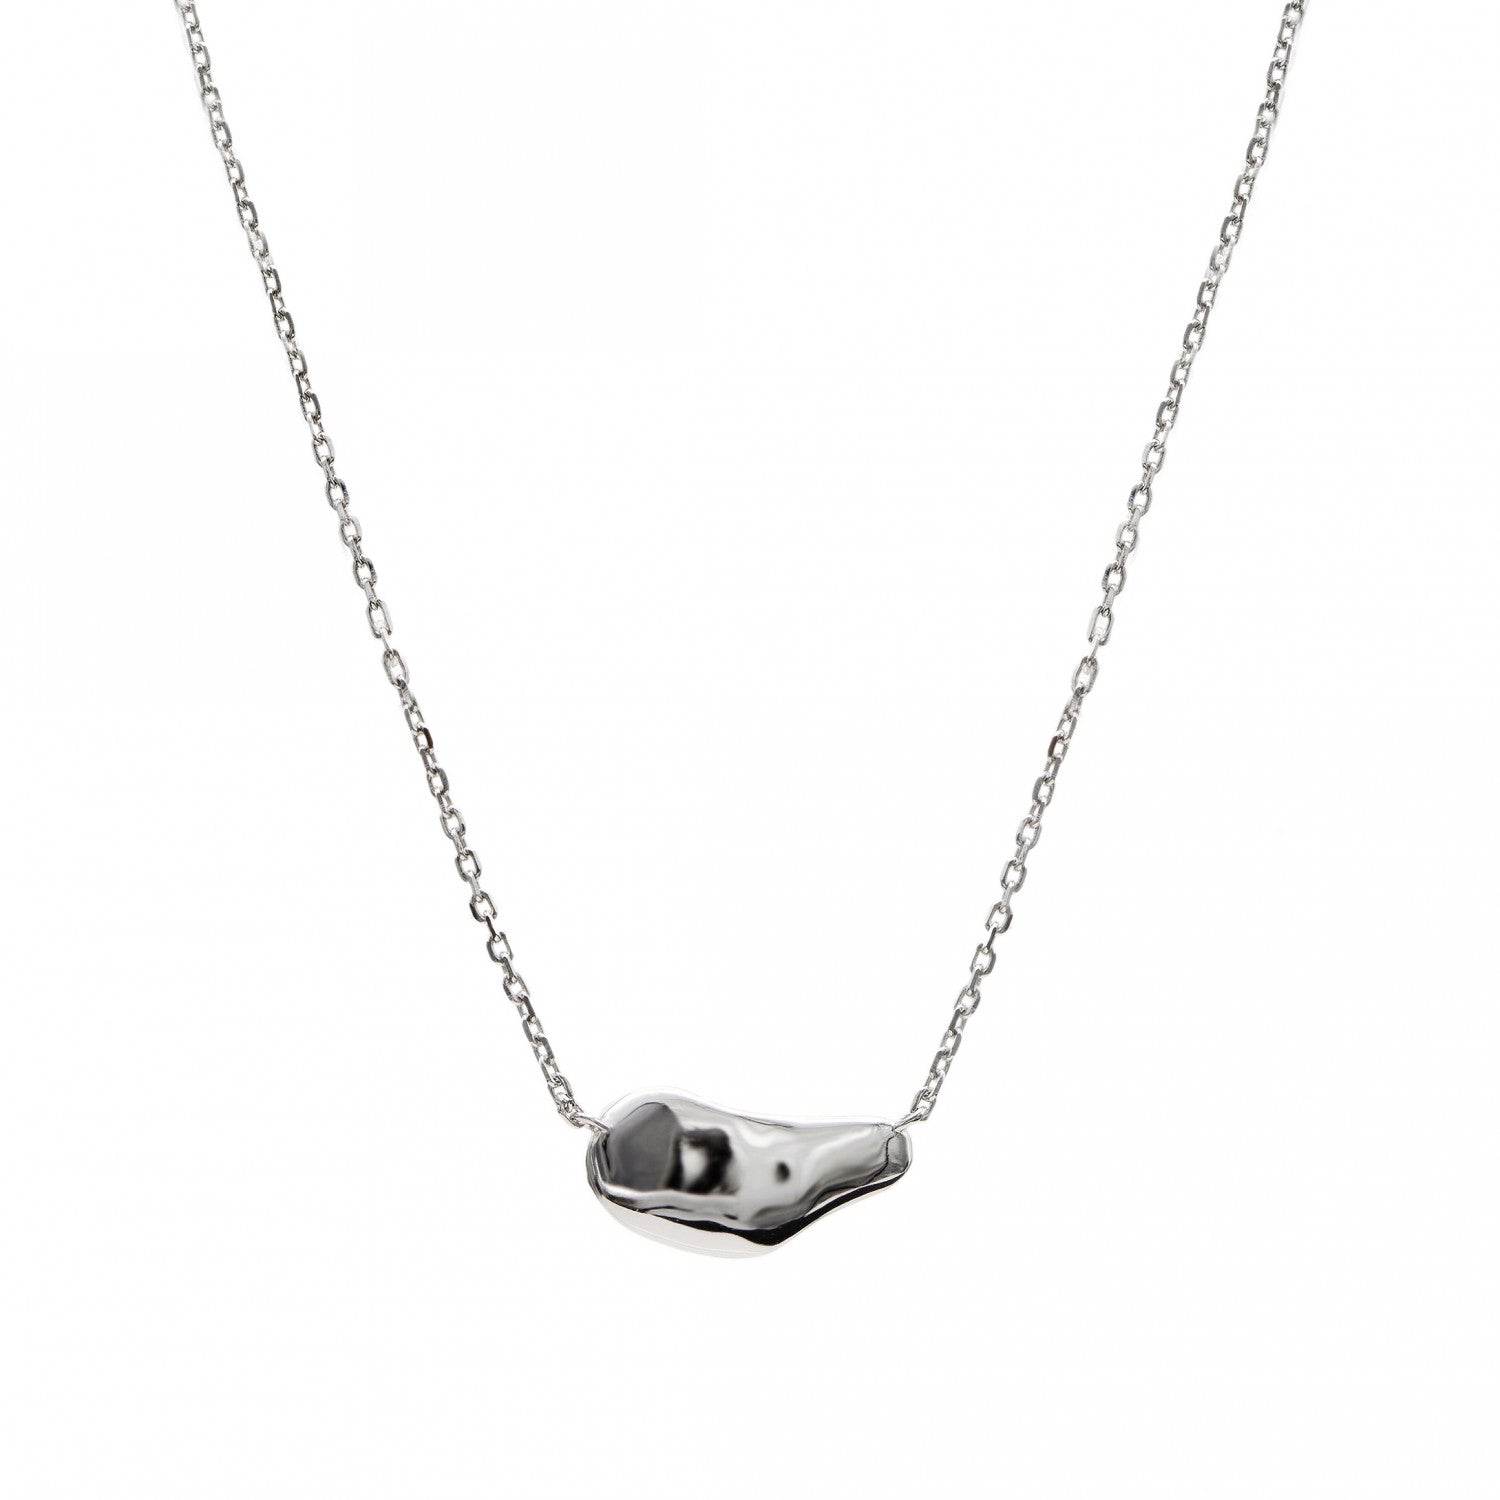 Necklace - Necklaces - Necklaces silver original horizontal liquid design